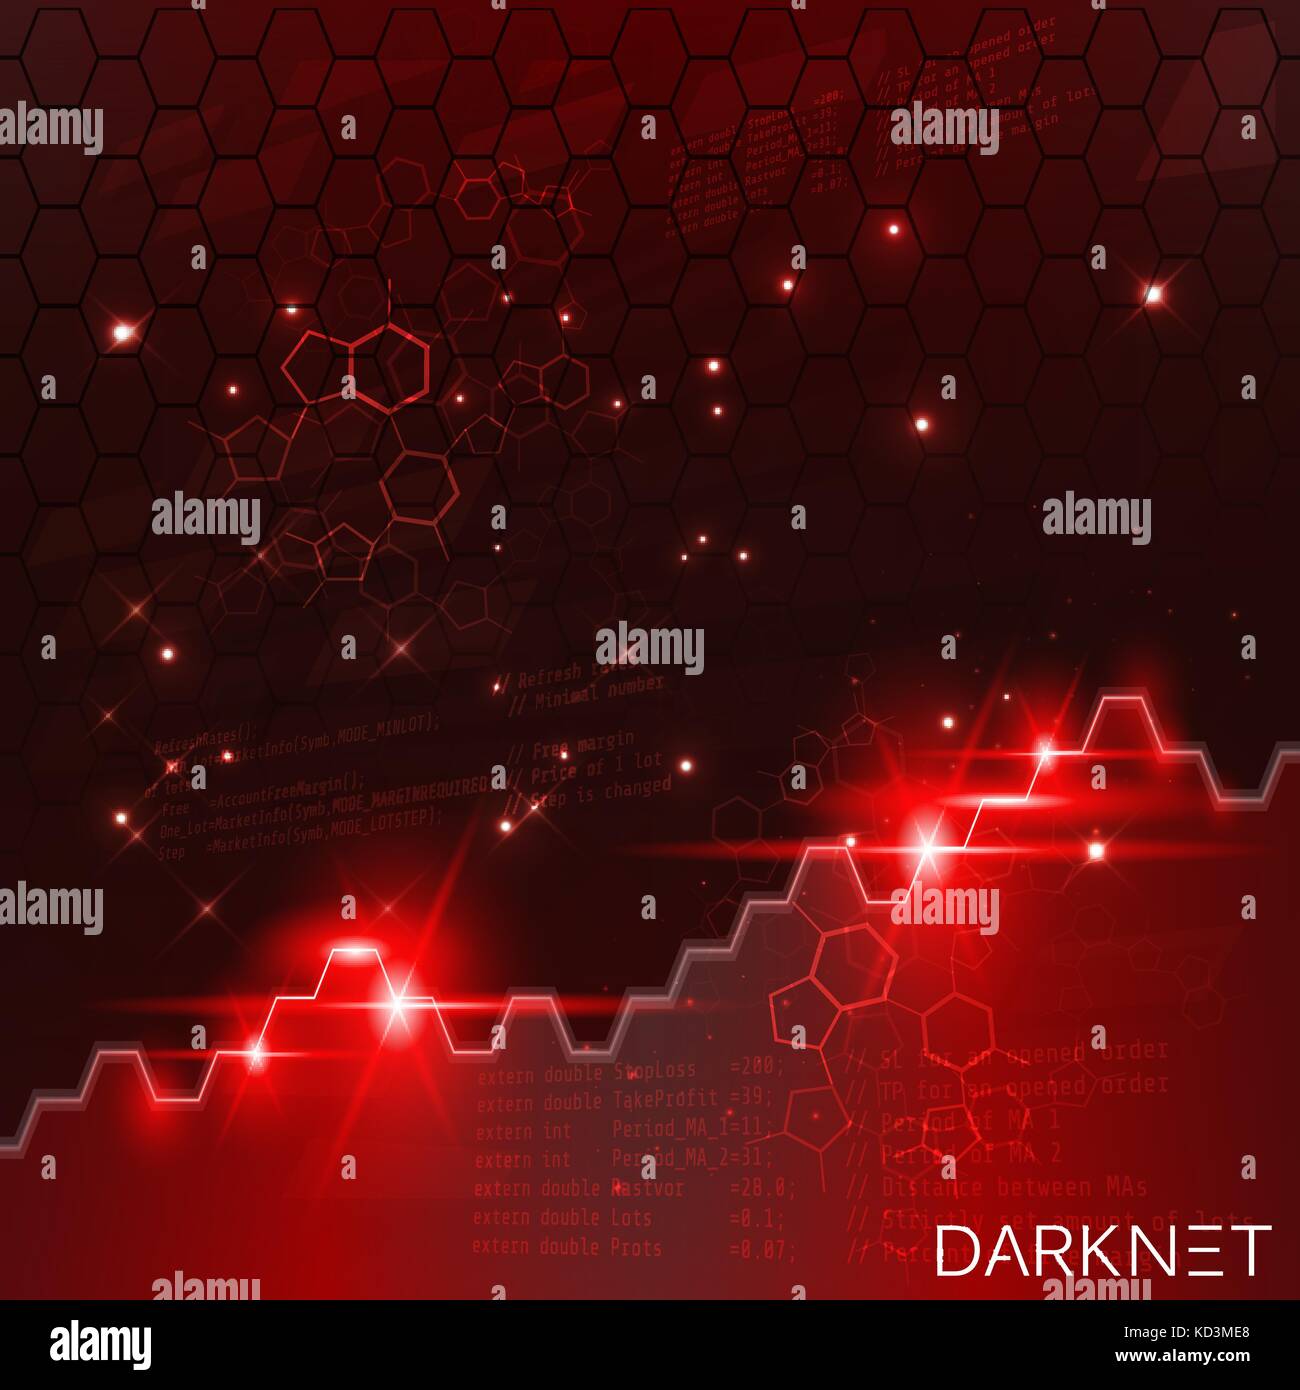 Red darknet тор браузер старая версия апк